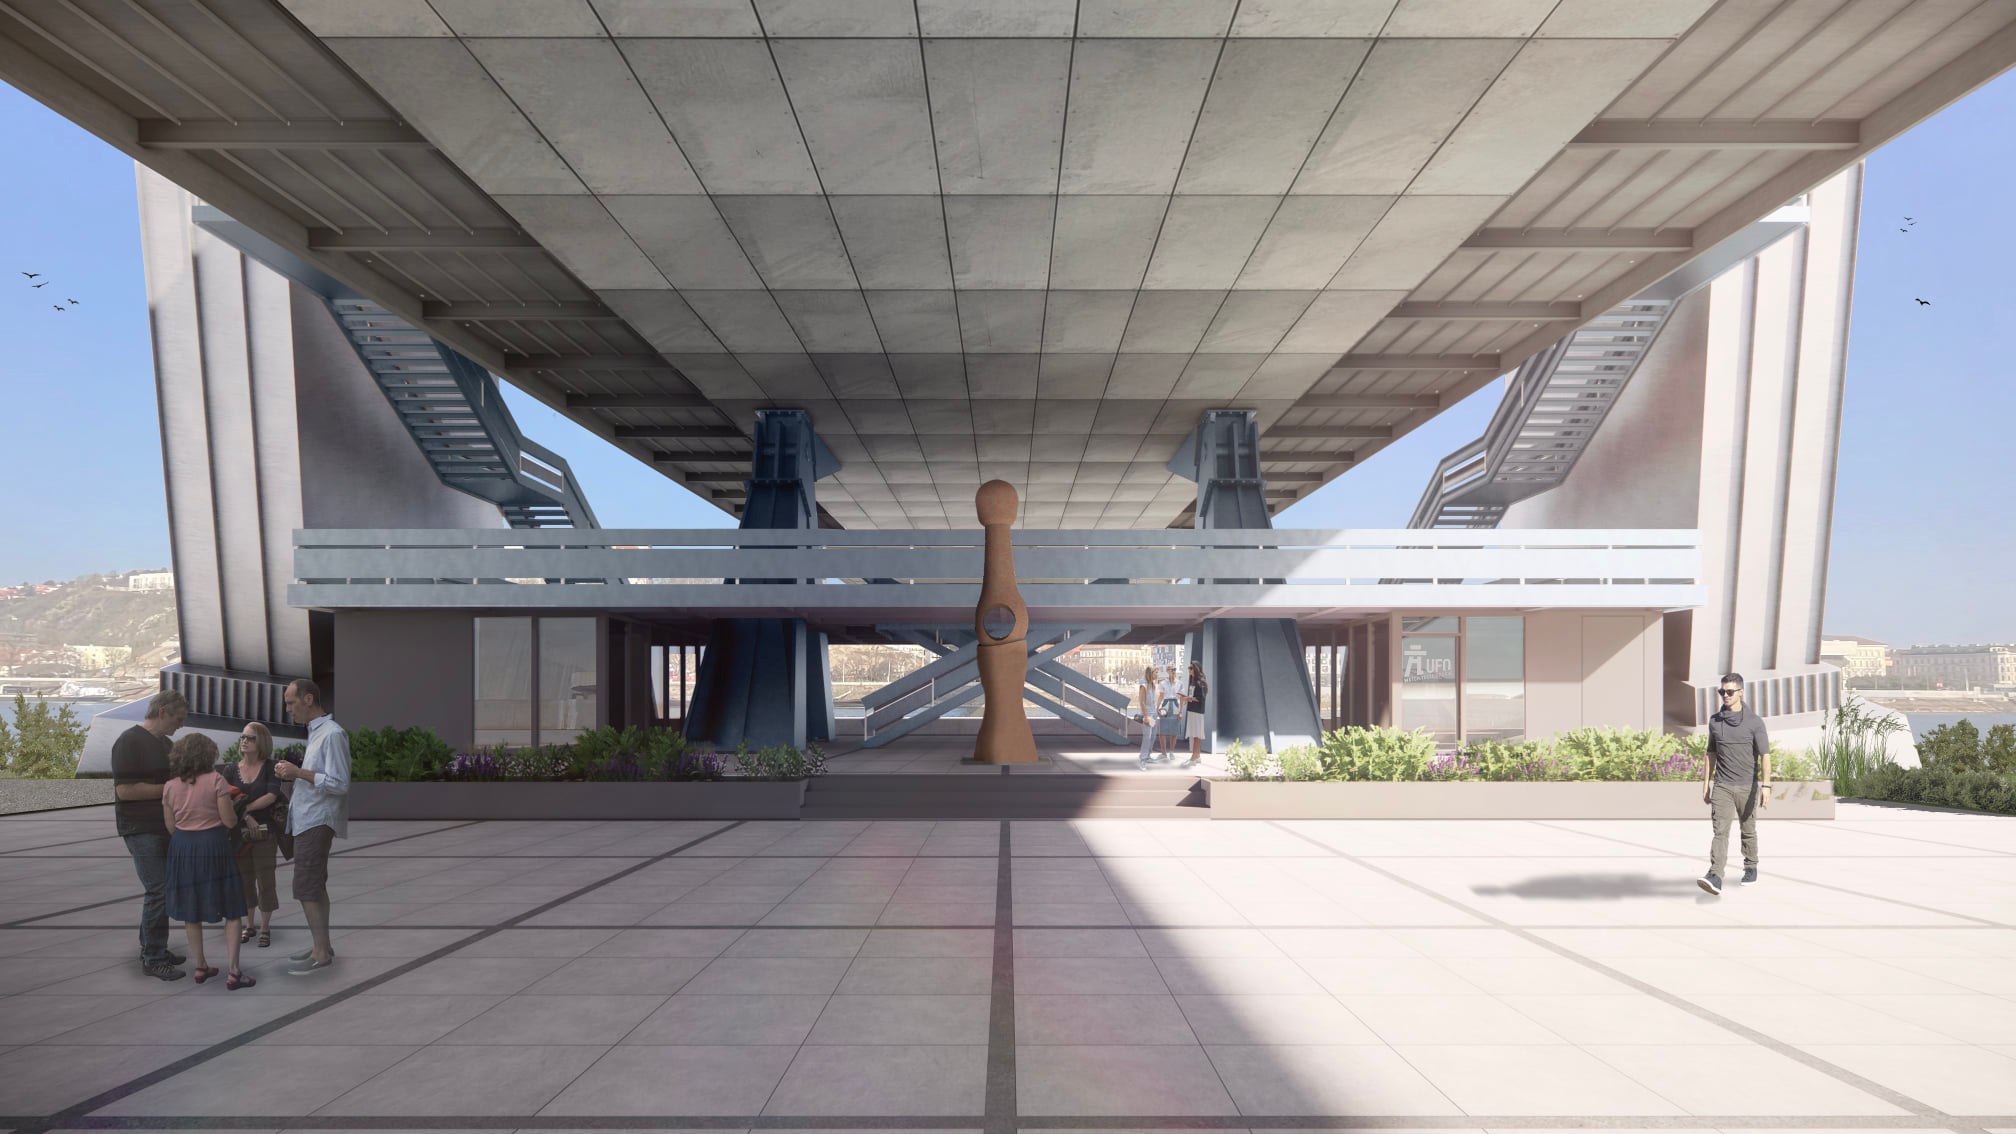 Projekt rekonštrukcie nástupného priestoru podmostia Mostu SNP do reštaurácie UFO, ktorý bol predstavený v roku 2022 primátorom Bratislavy Matúšom Vallom